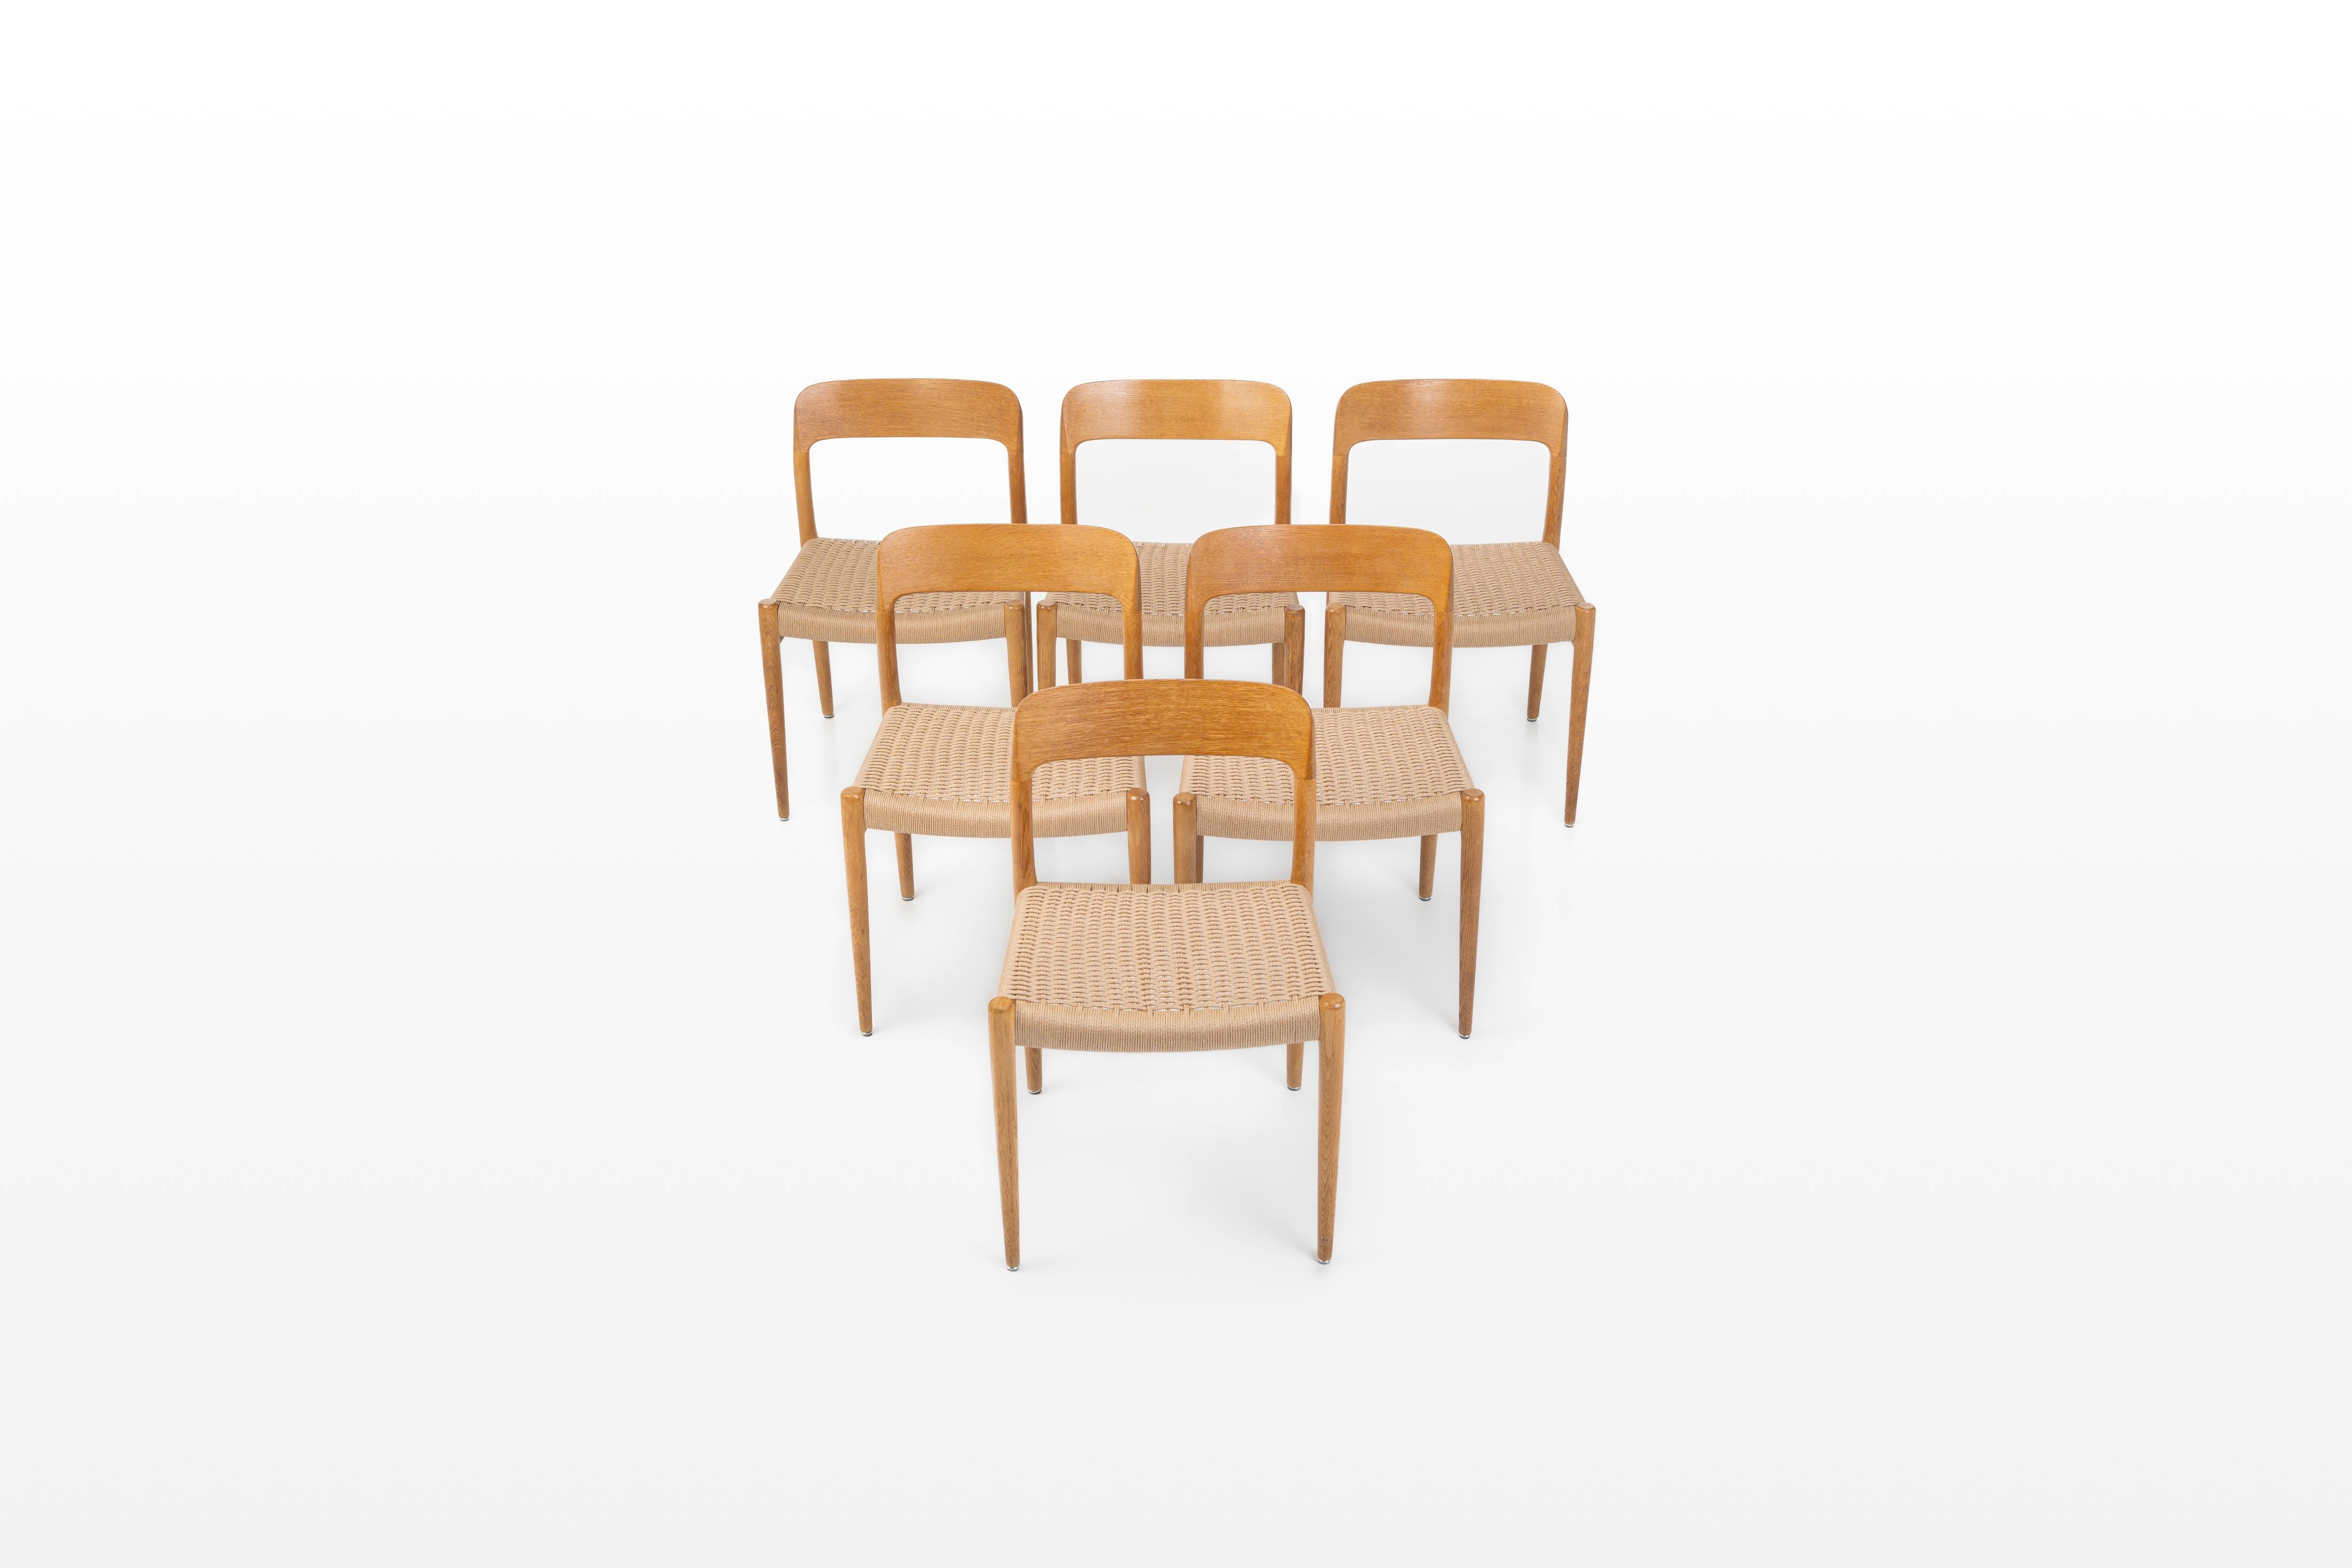 Ensemble de six chaises de salle à manger 'Model 75' conçues par Niels Otto Møller pour I.L.A. Møllers Møbelfabrik, Danemark Années 1960. Les chaises ont un cadre en chêne et une assise en corde de papier. Les chaises sont marquées par le producteur